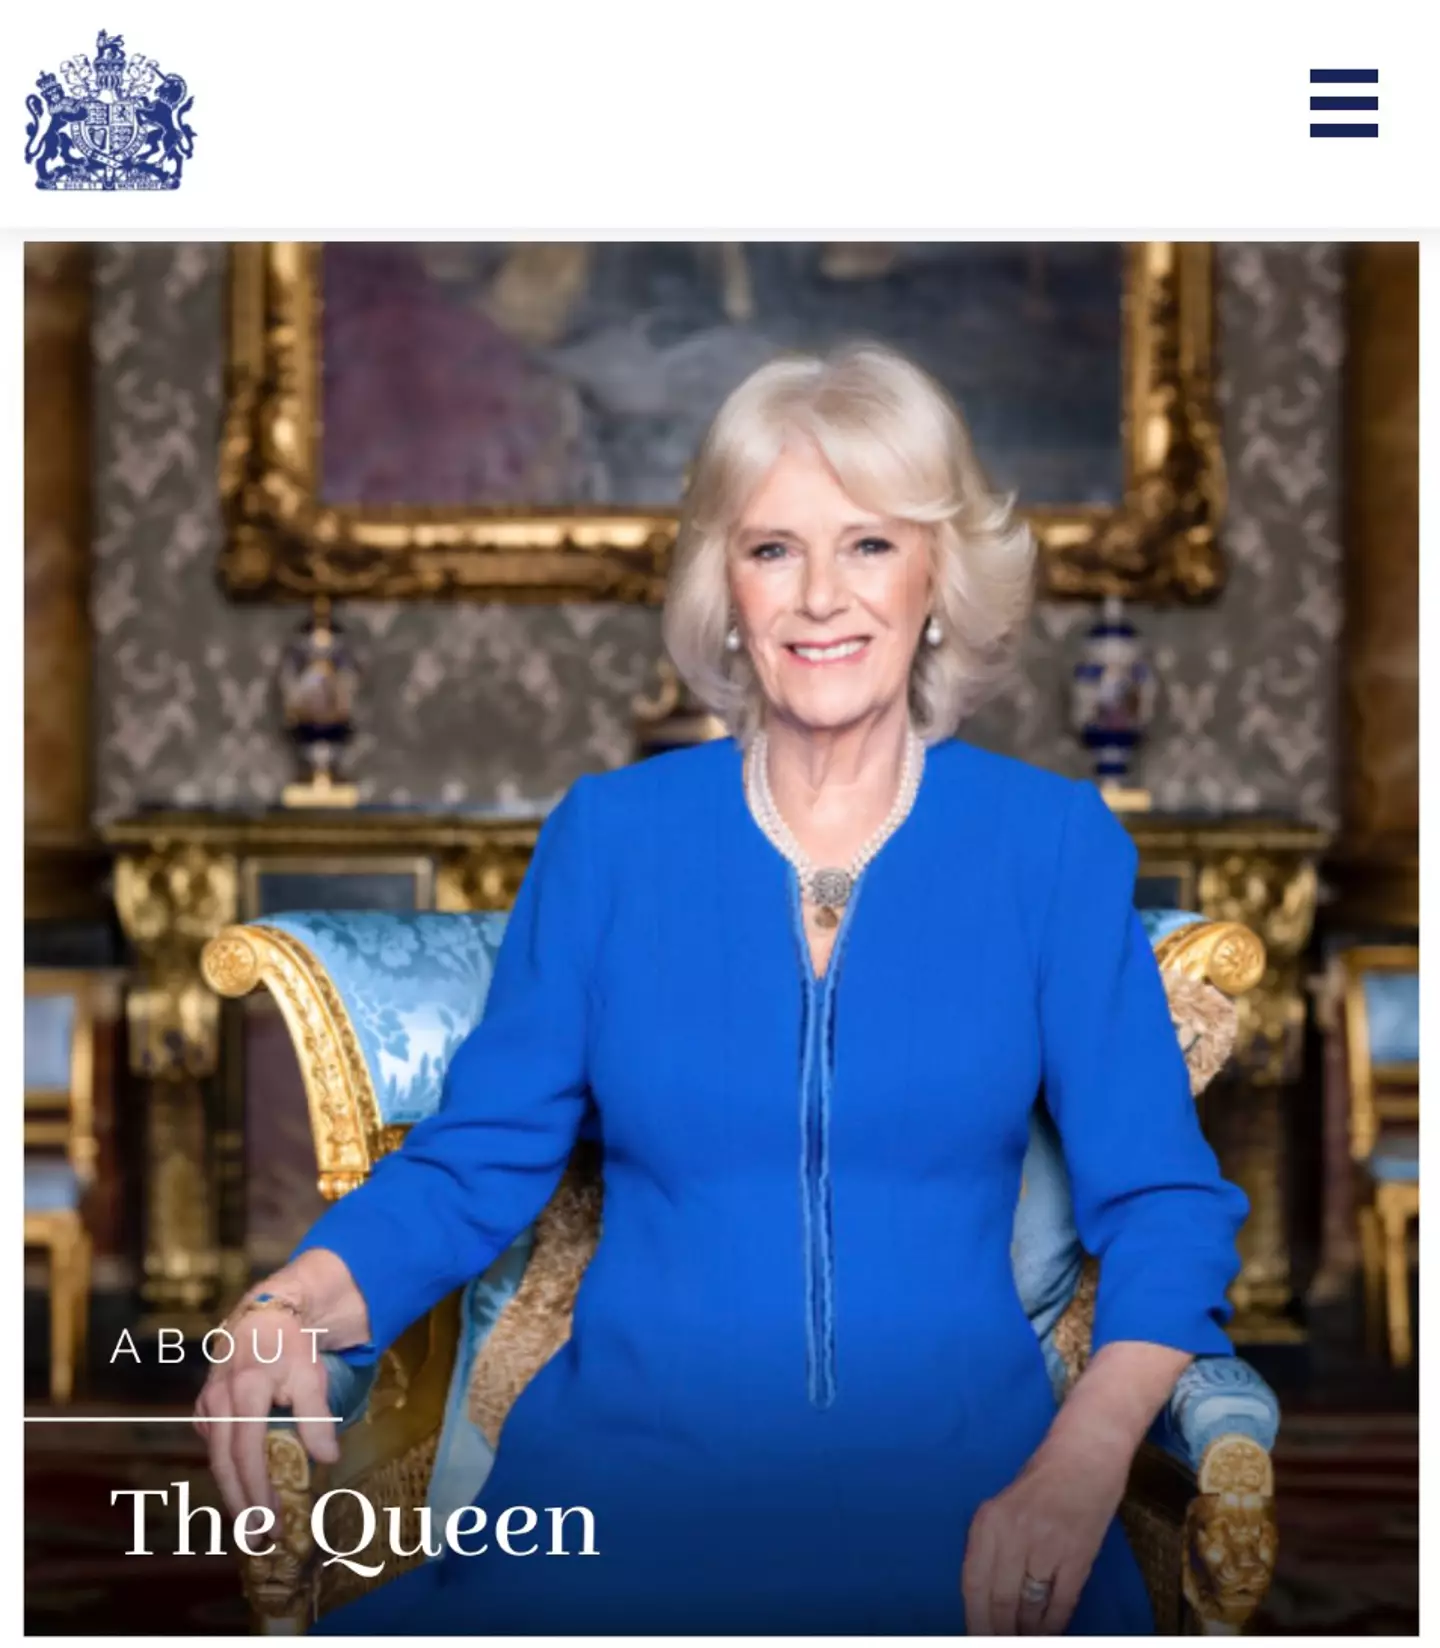 Camilla has officially become Queen.